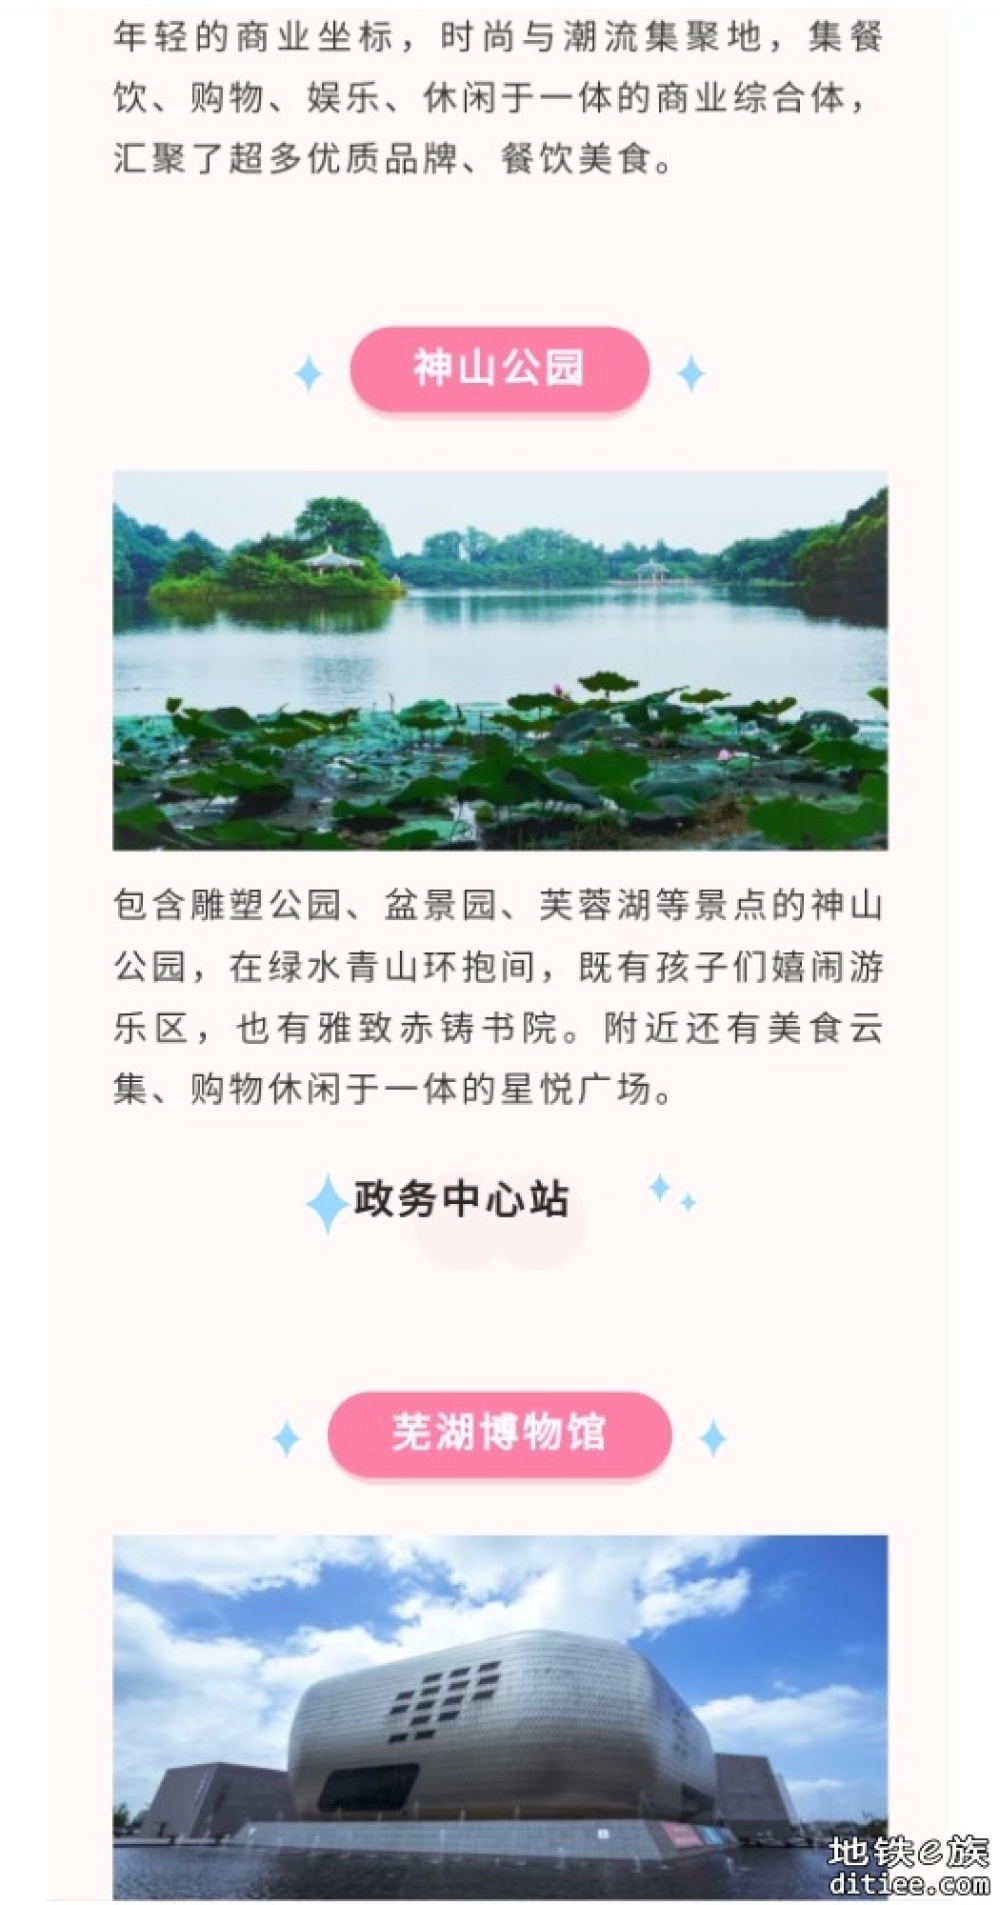 芜湖单轨超强游玩指南 收藏不迷路